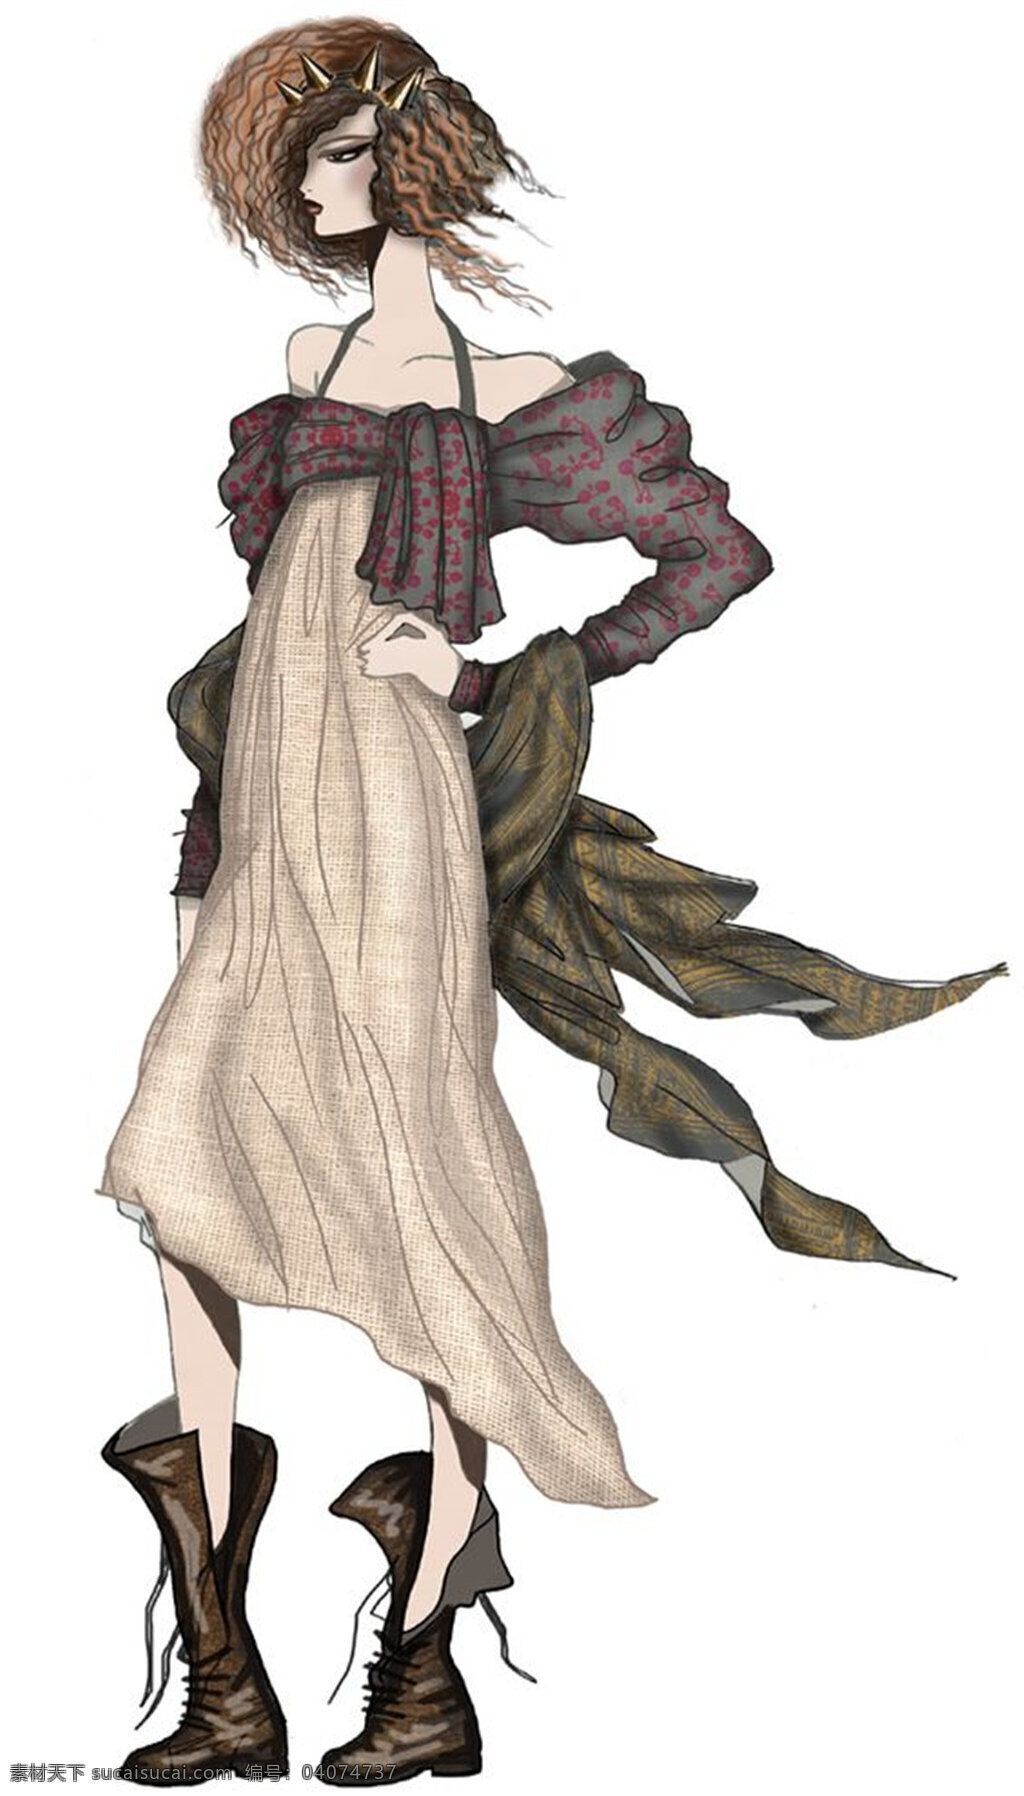 个性 时尚 花纹 背心 裙 女装 效果图 背心裙 长靴 服装设计 服装效果图